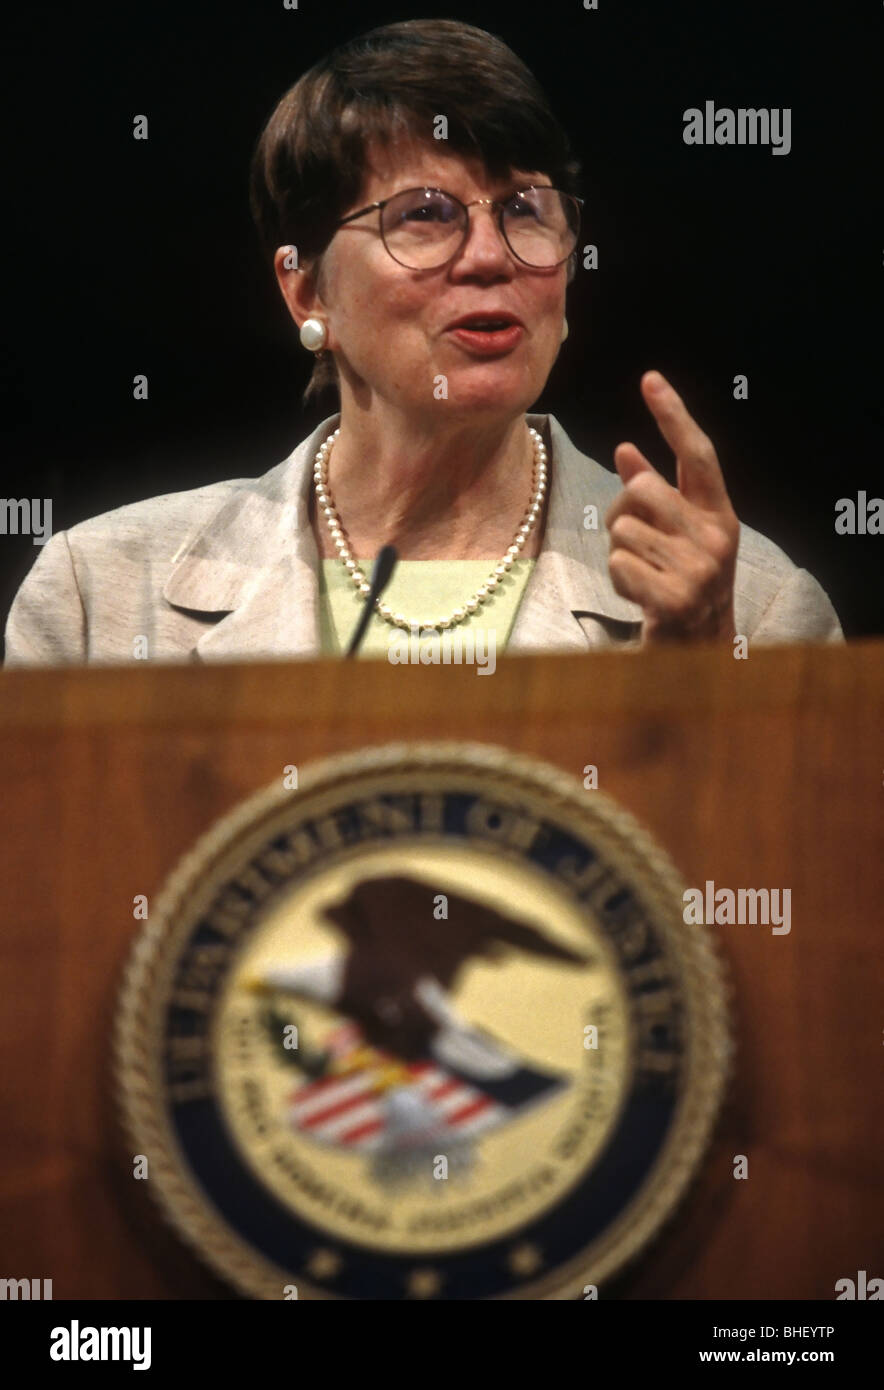 La Procuradora General Janet Reno ofrece una conferencia de prensa en el Departamento de Justicia en Washington, D.C. Foto de stock